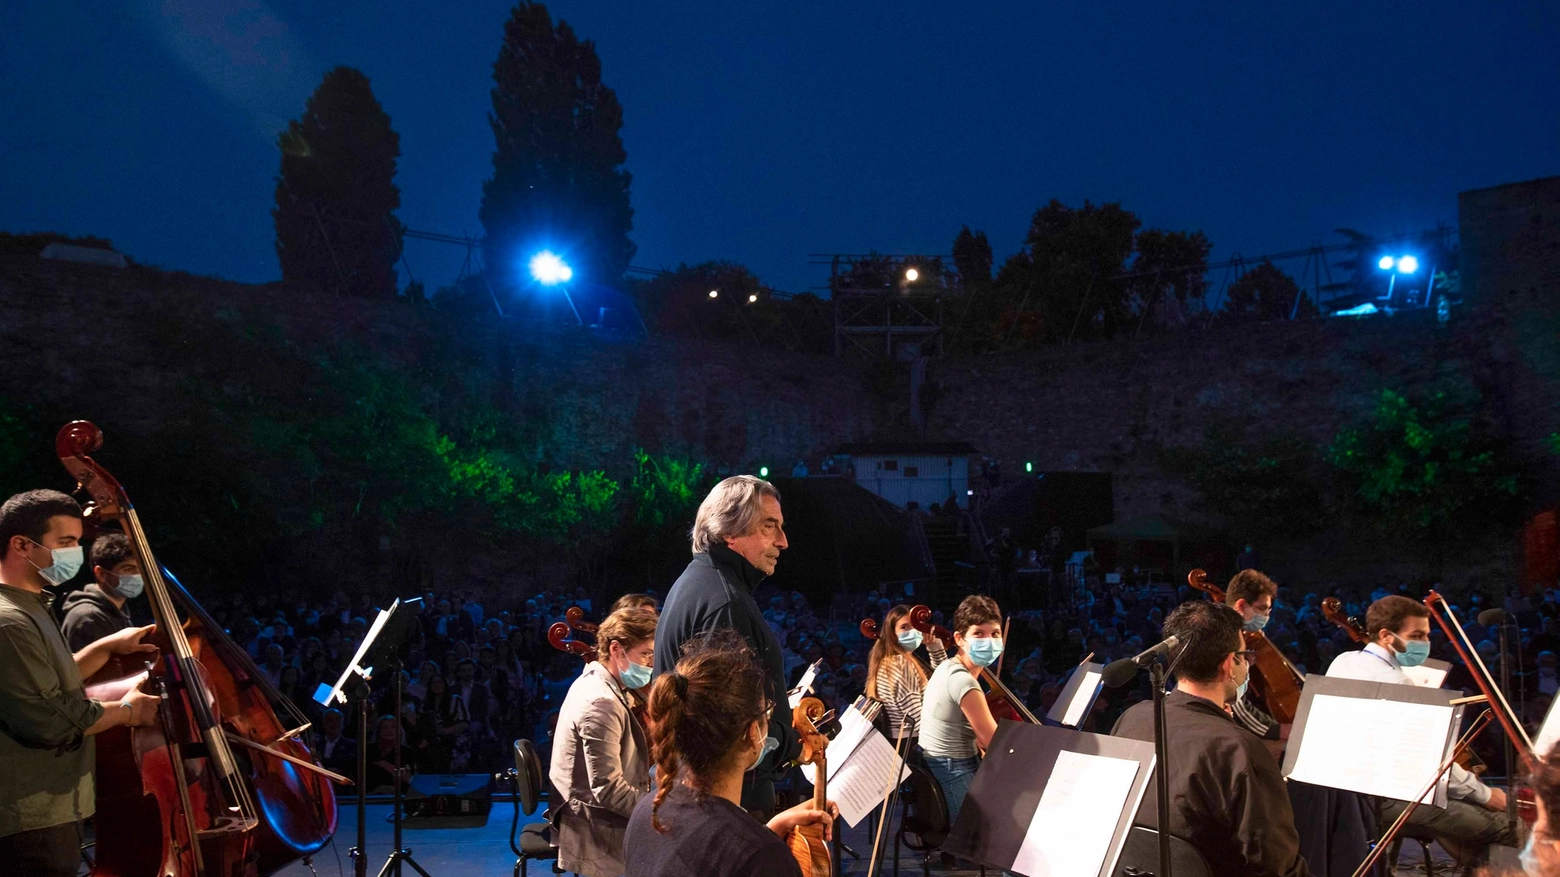 Ravenna festival, il maestro Riccardo Muti dirige il concerto di apertura